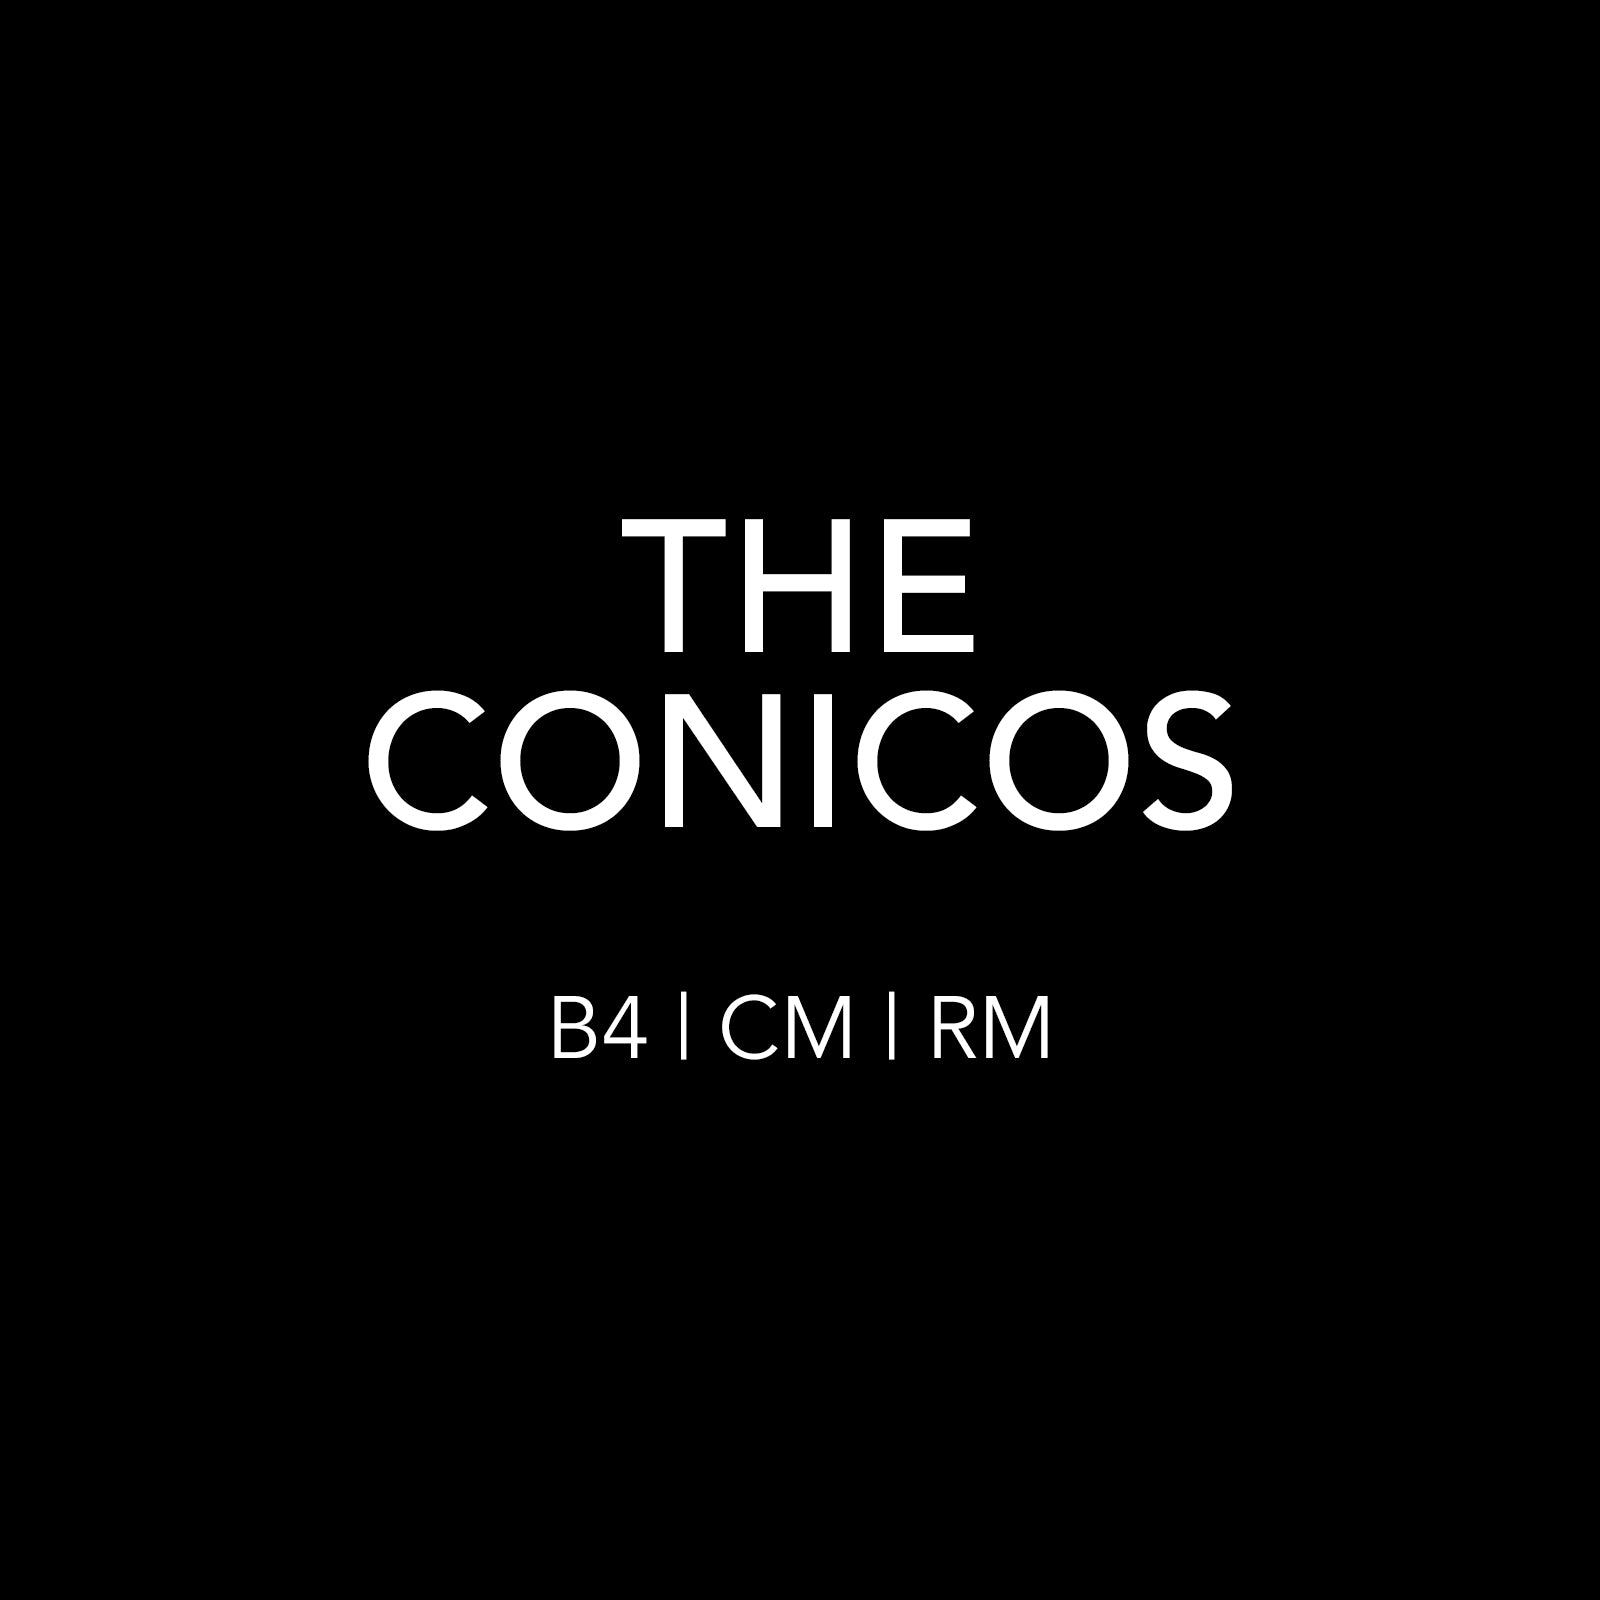 THE CONICOS